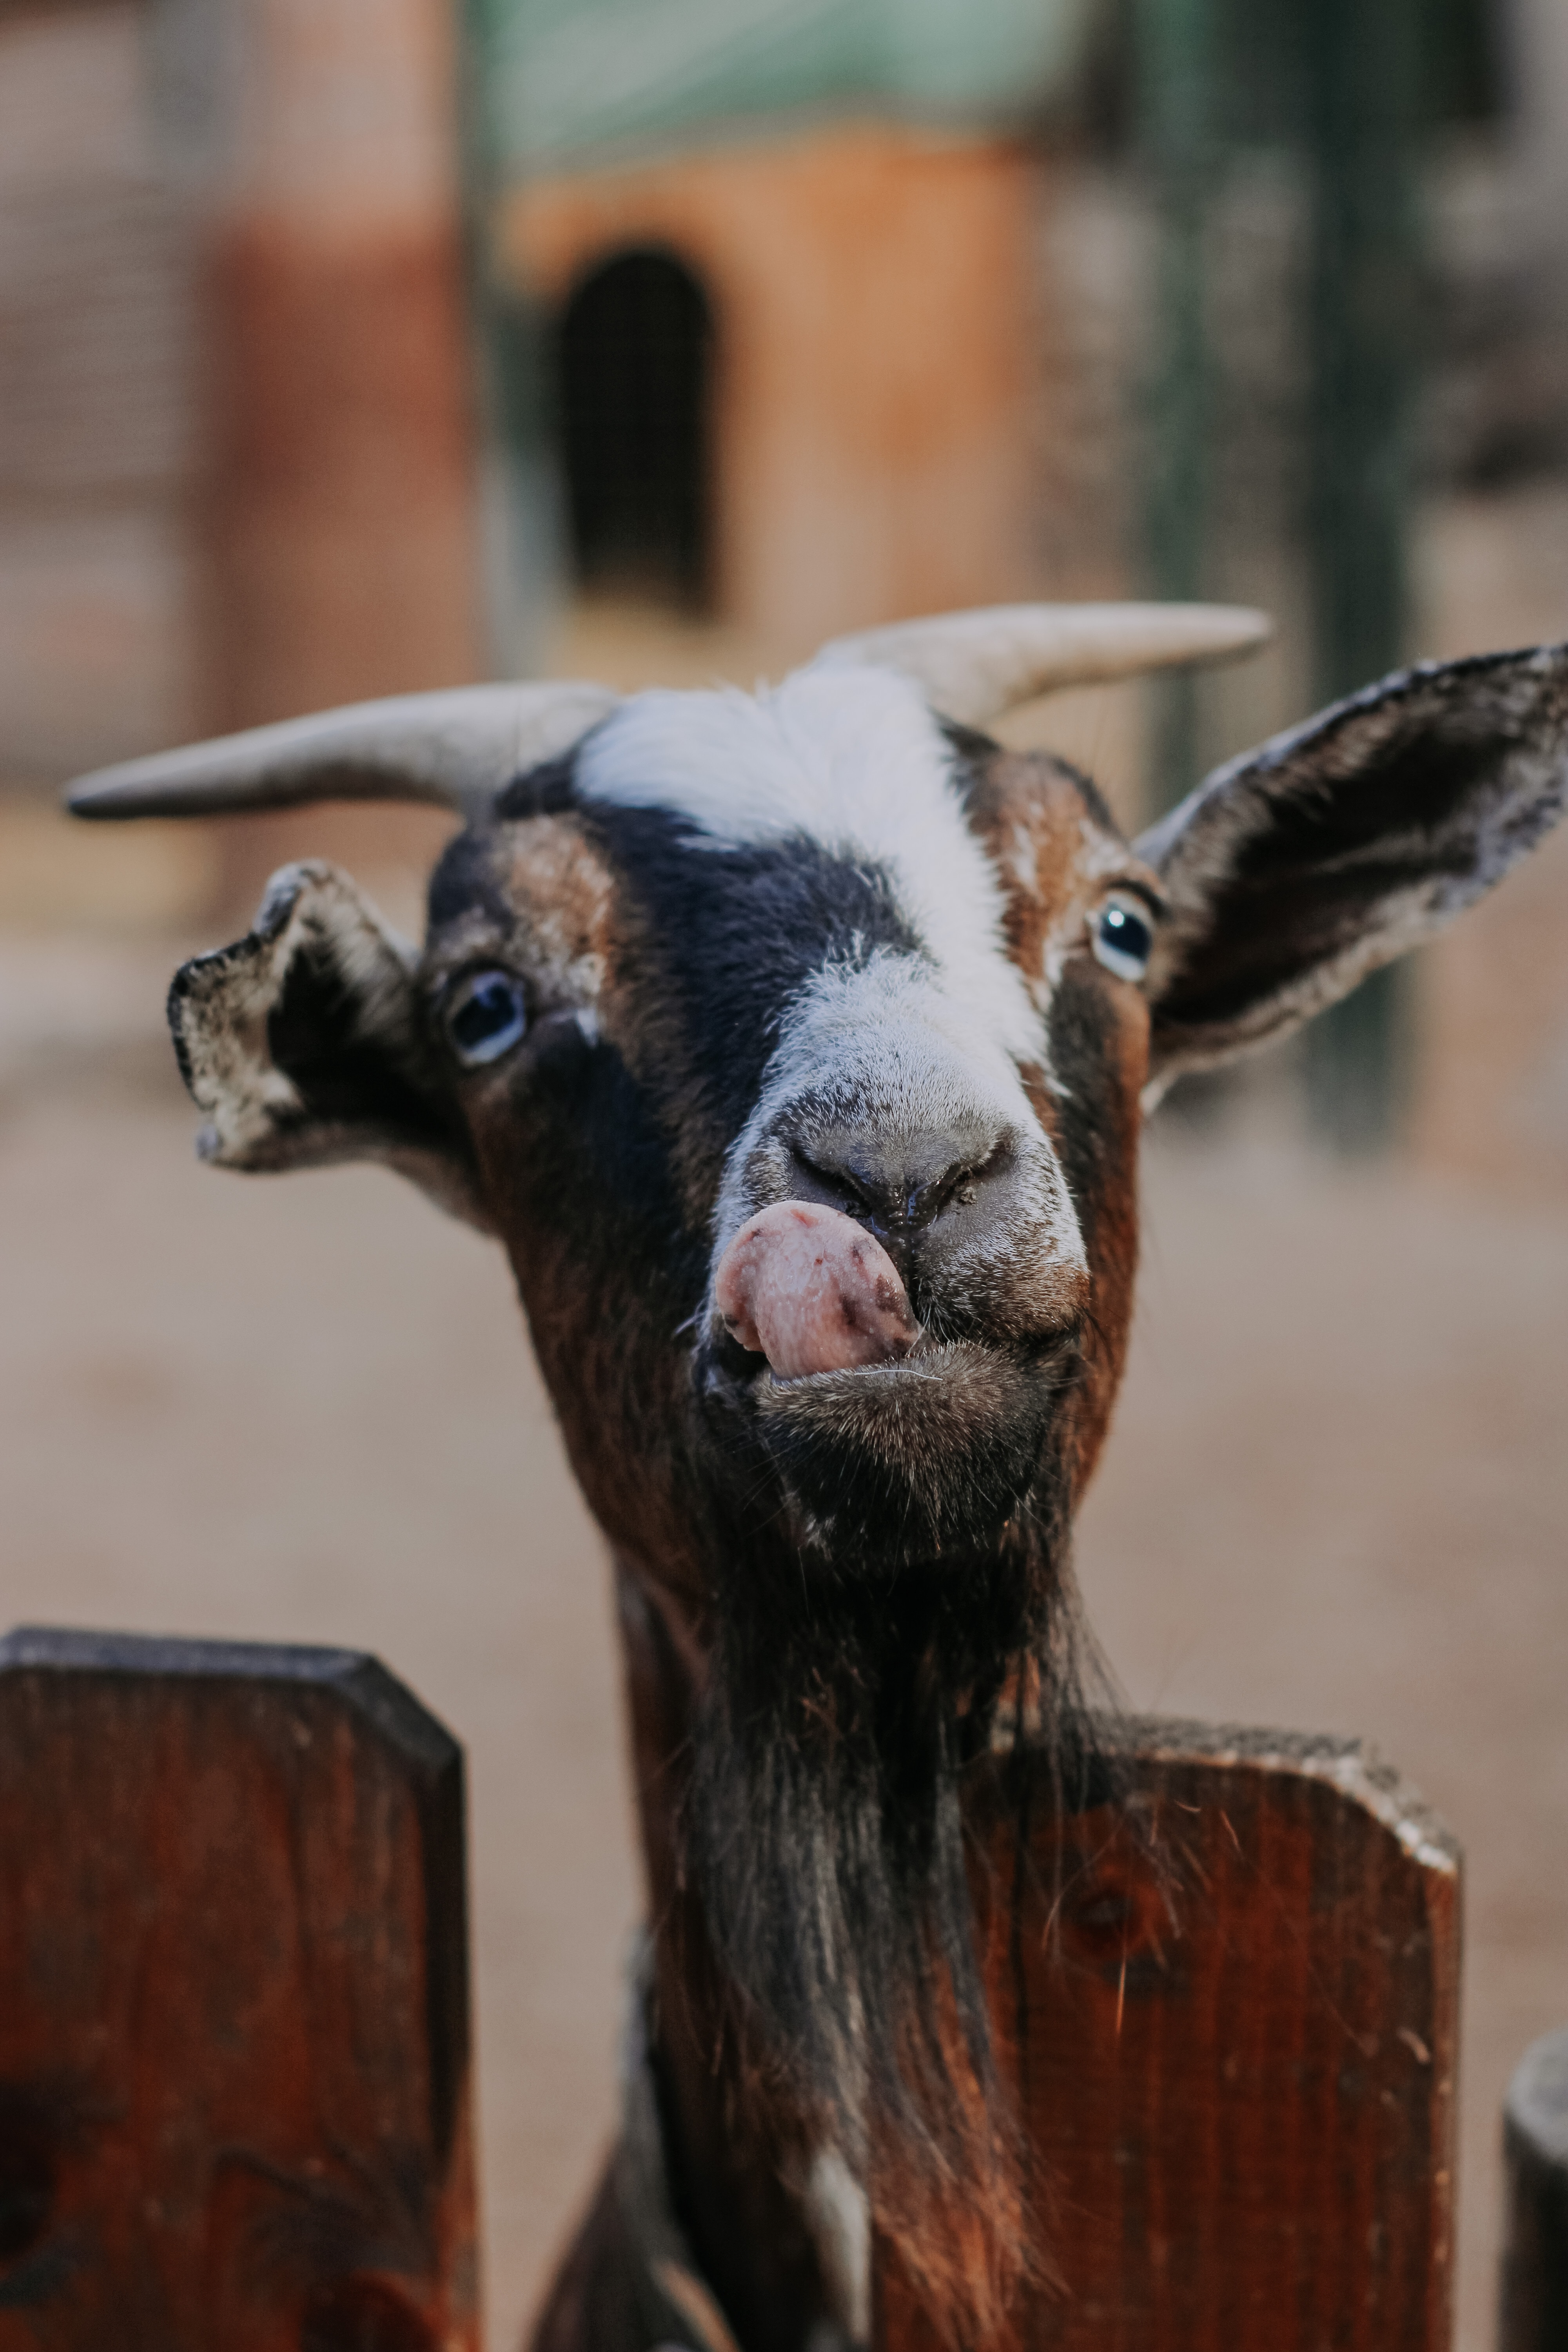 Goat Photo by Nataliya Melnychuk on Unsplash